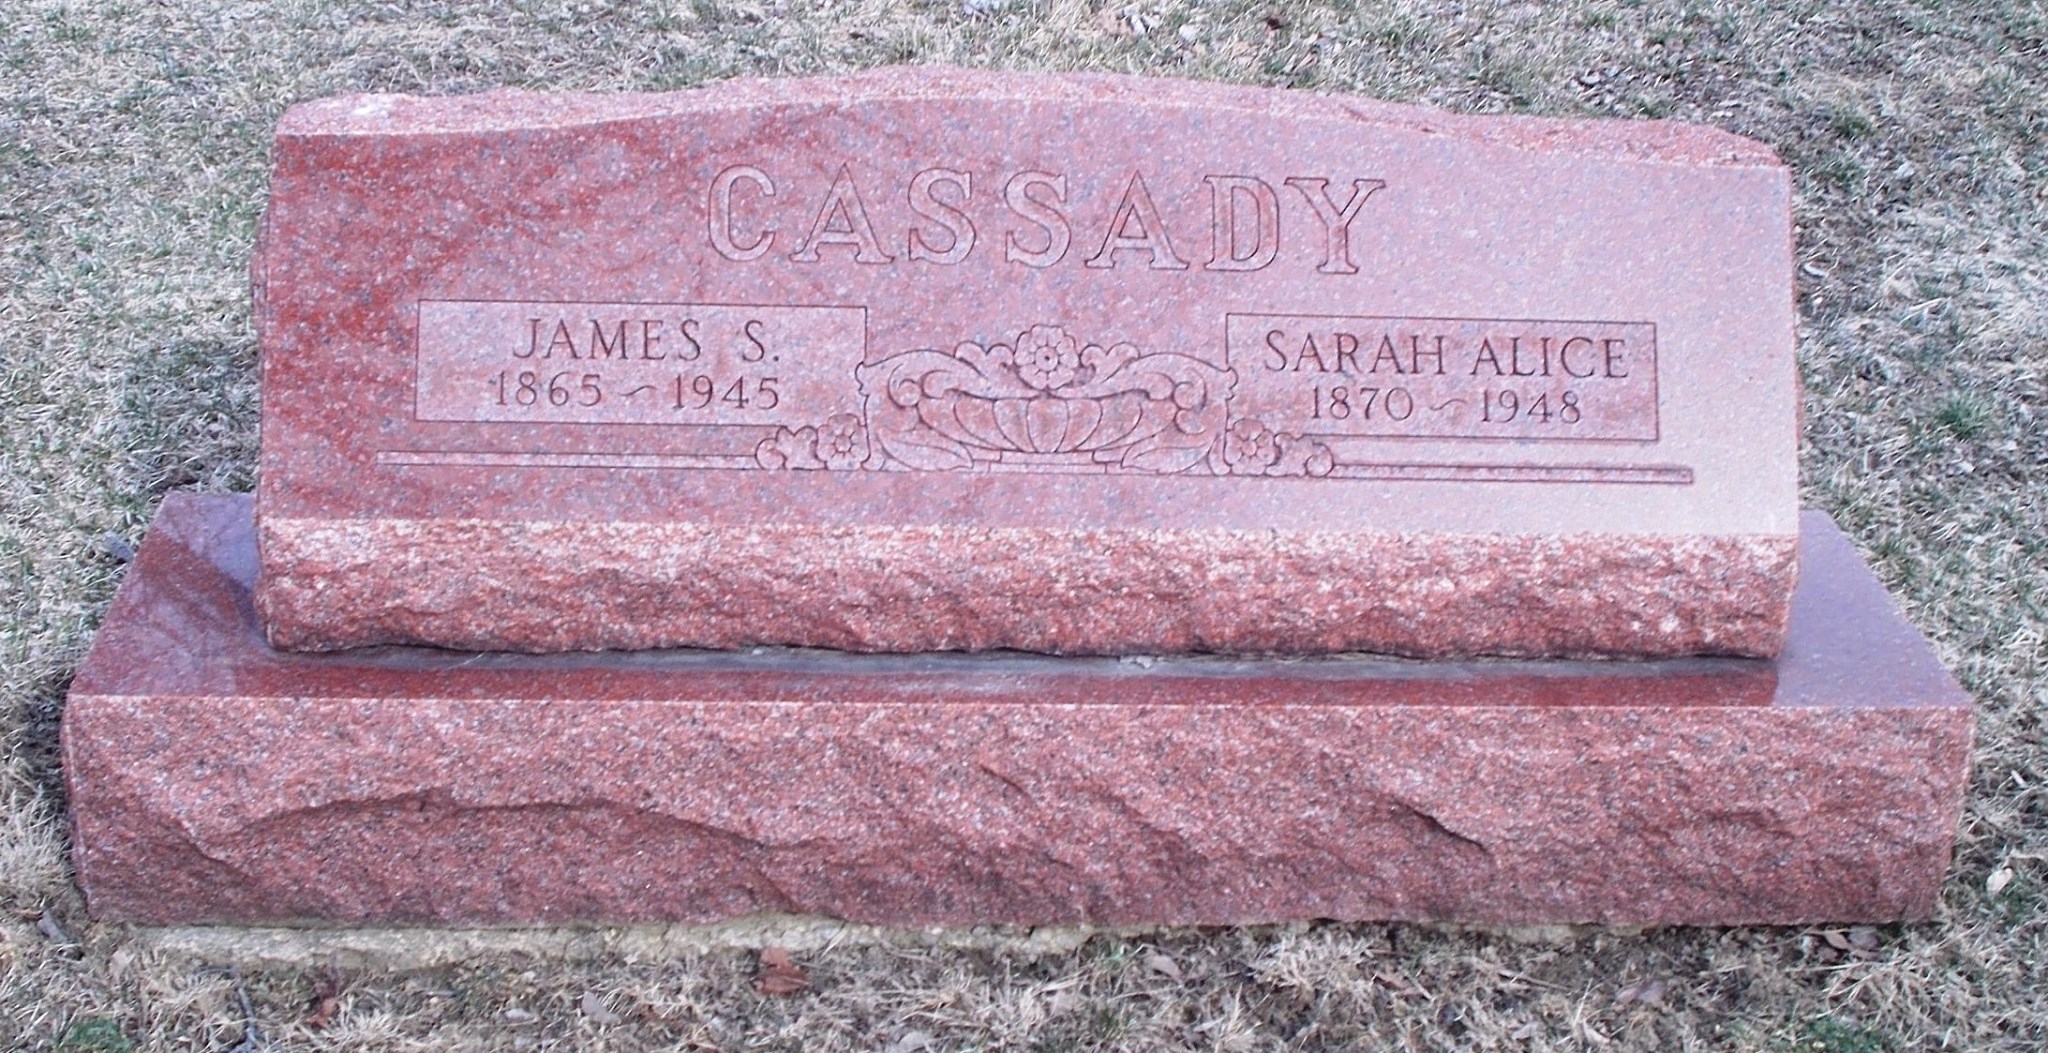 James S Cassady